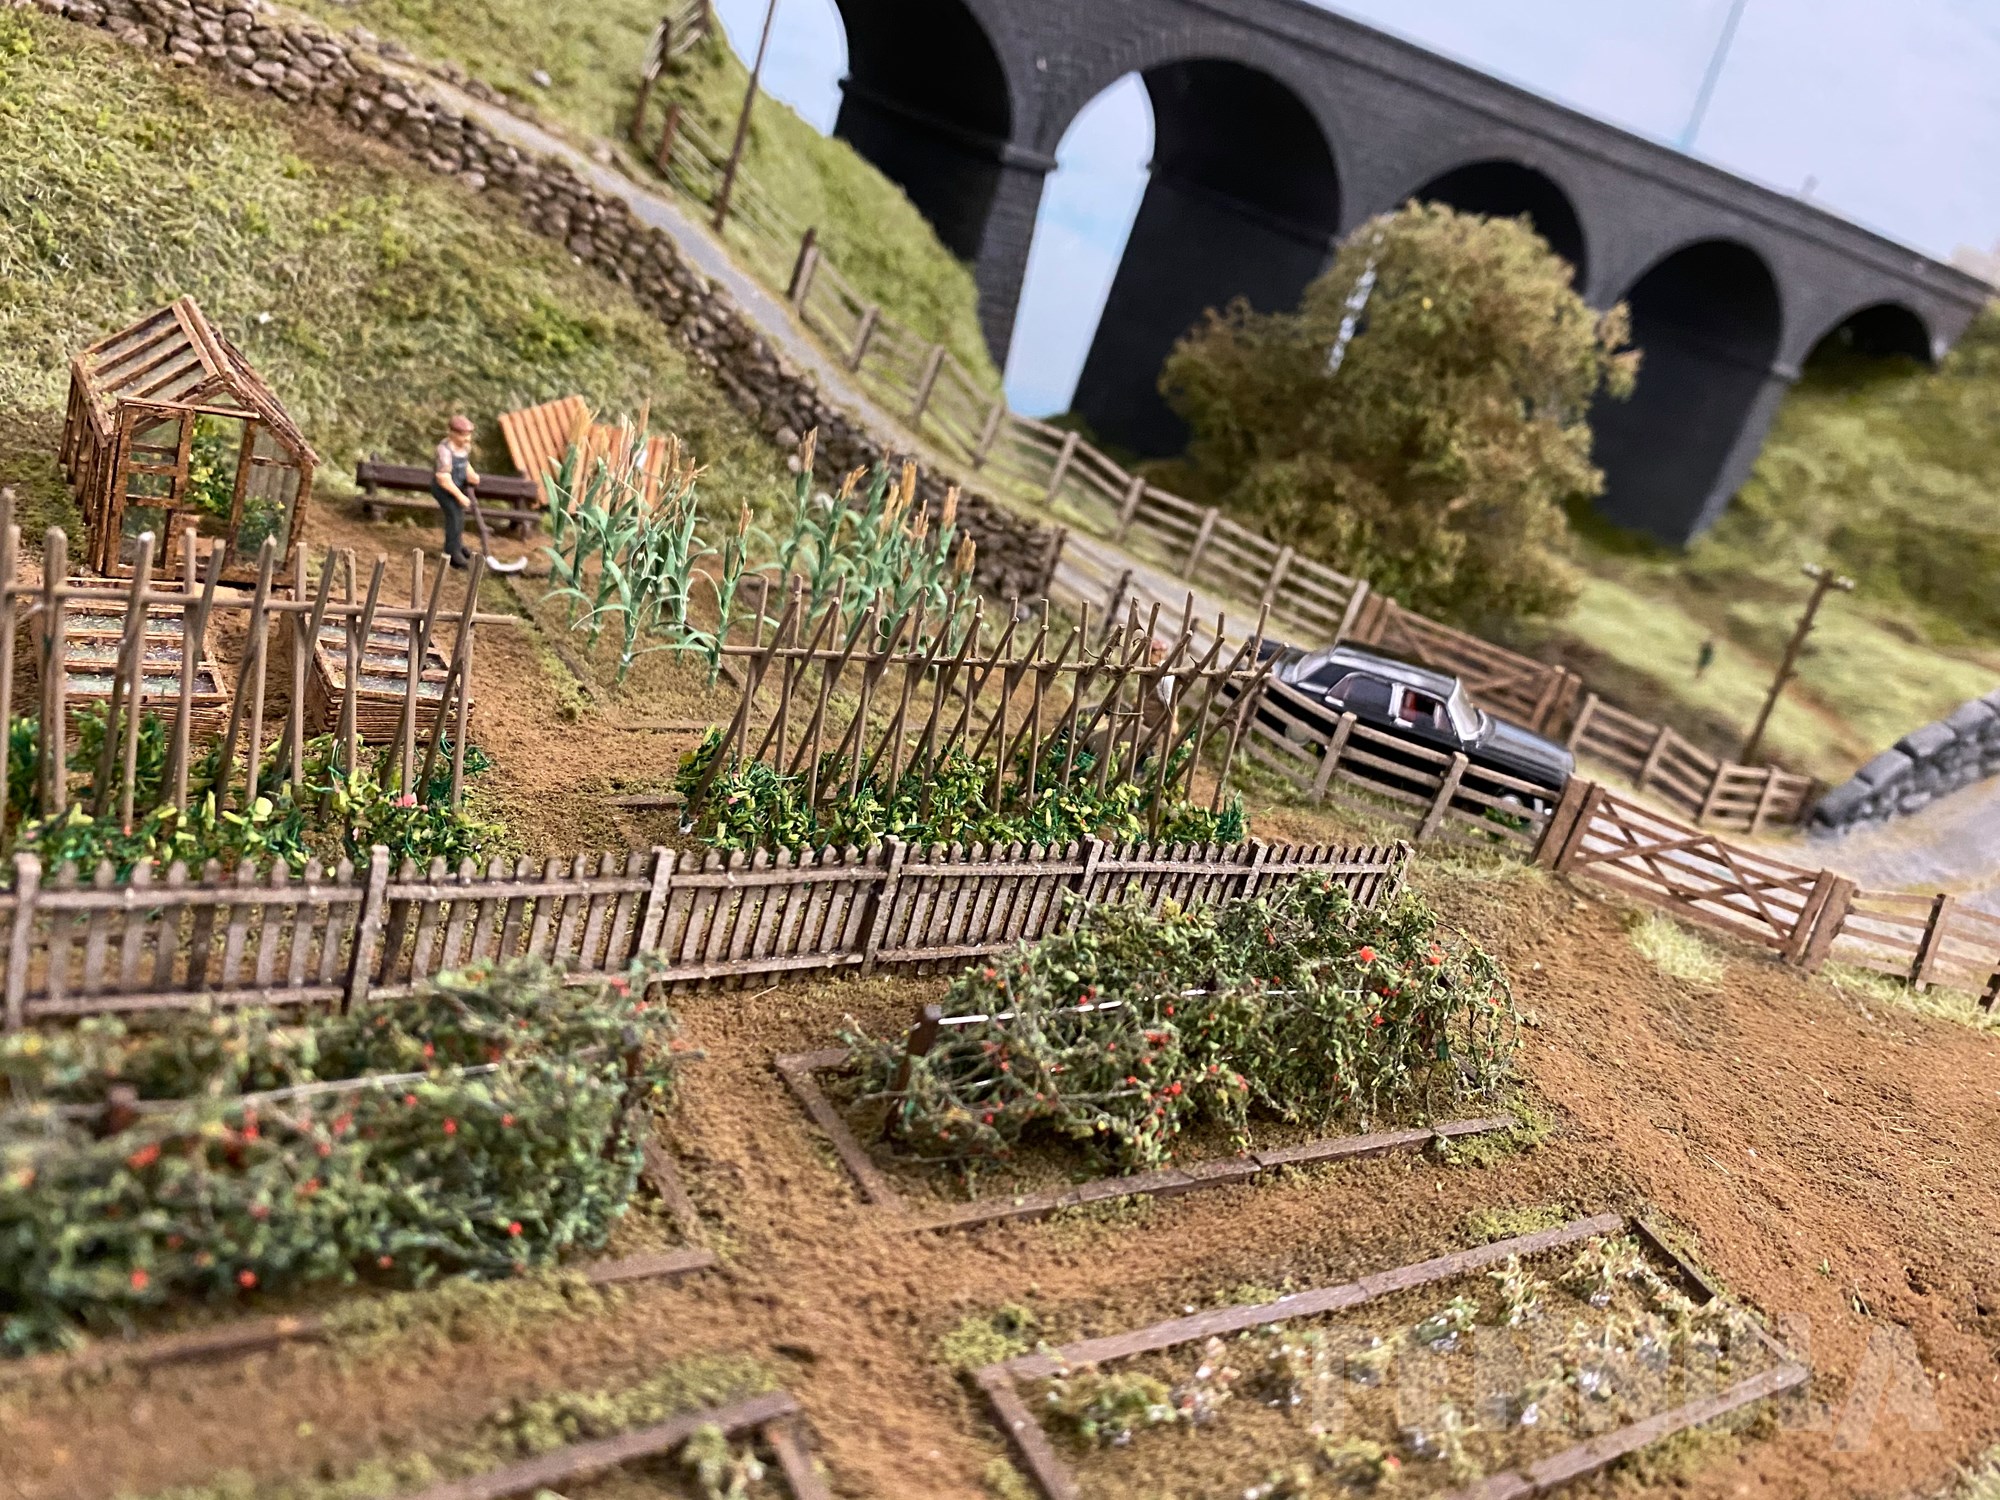 Eine englische Modellbahnanlage mit vorbildlicher Landschaftsgestaltung - Sehenswert!